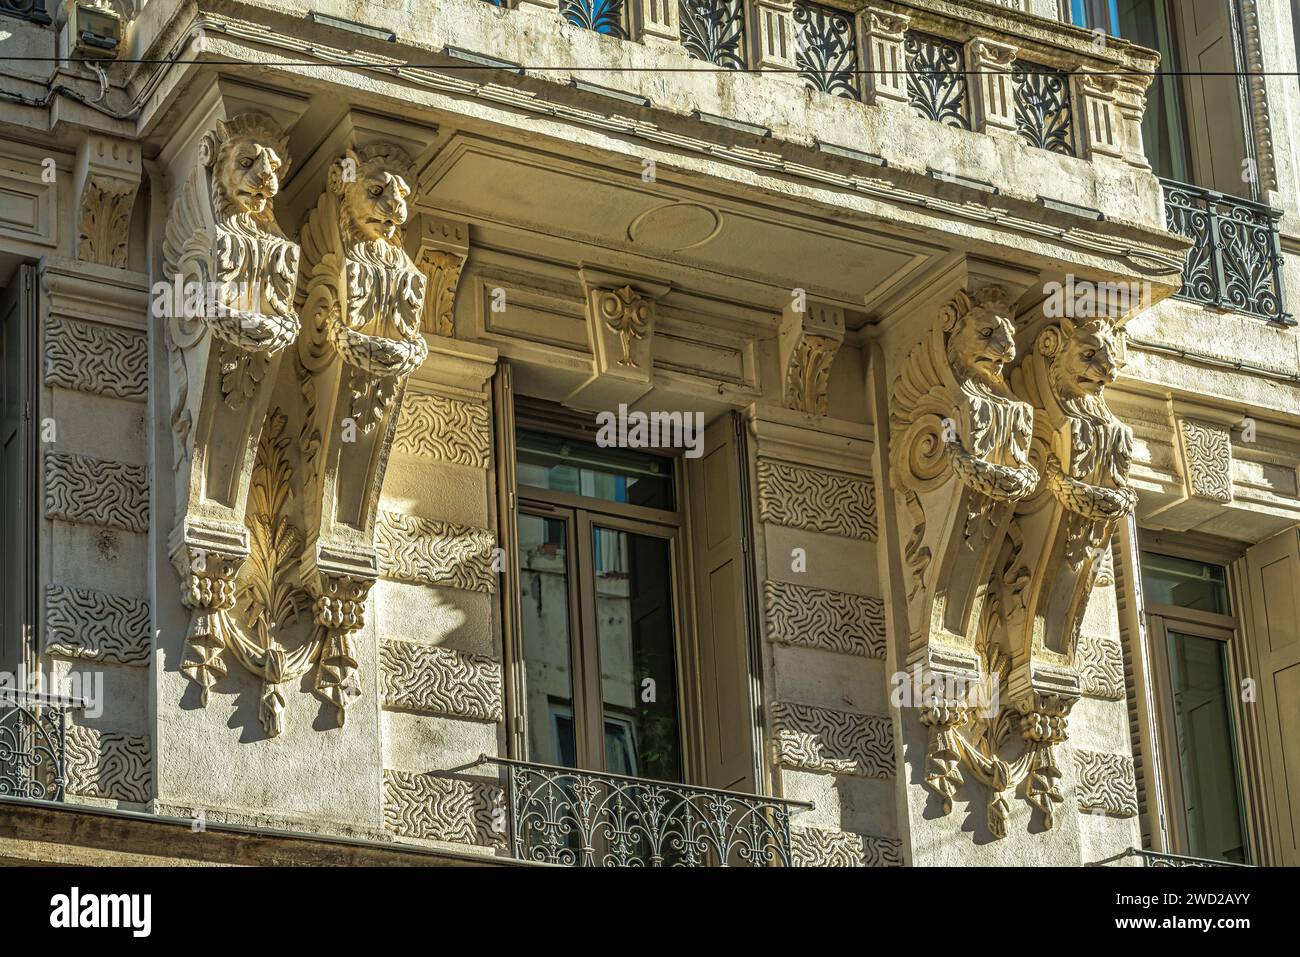 Détail architectural de style baroque de la façade d'un des bâtiments donnant sur la rue de General Foy, au centre de Saint-Étienne. France Banque D'Images